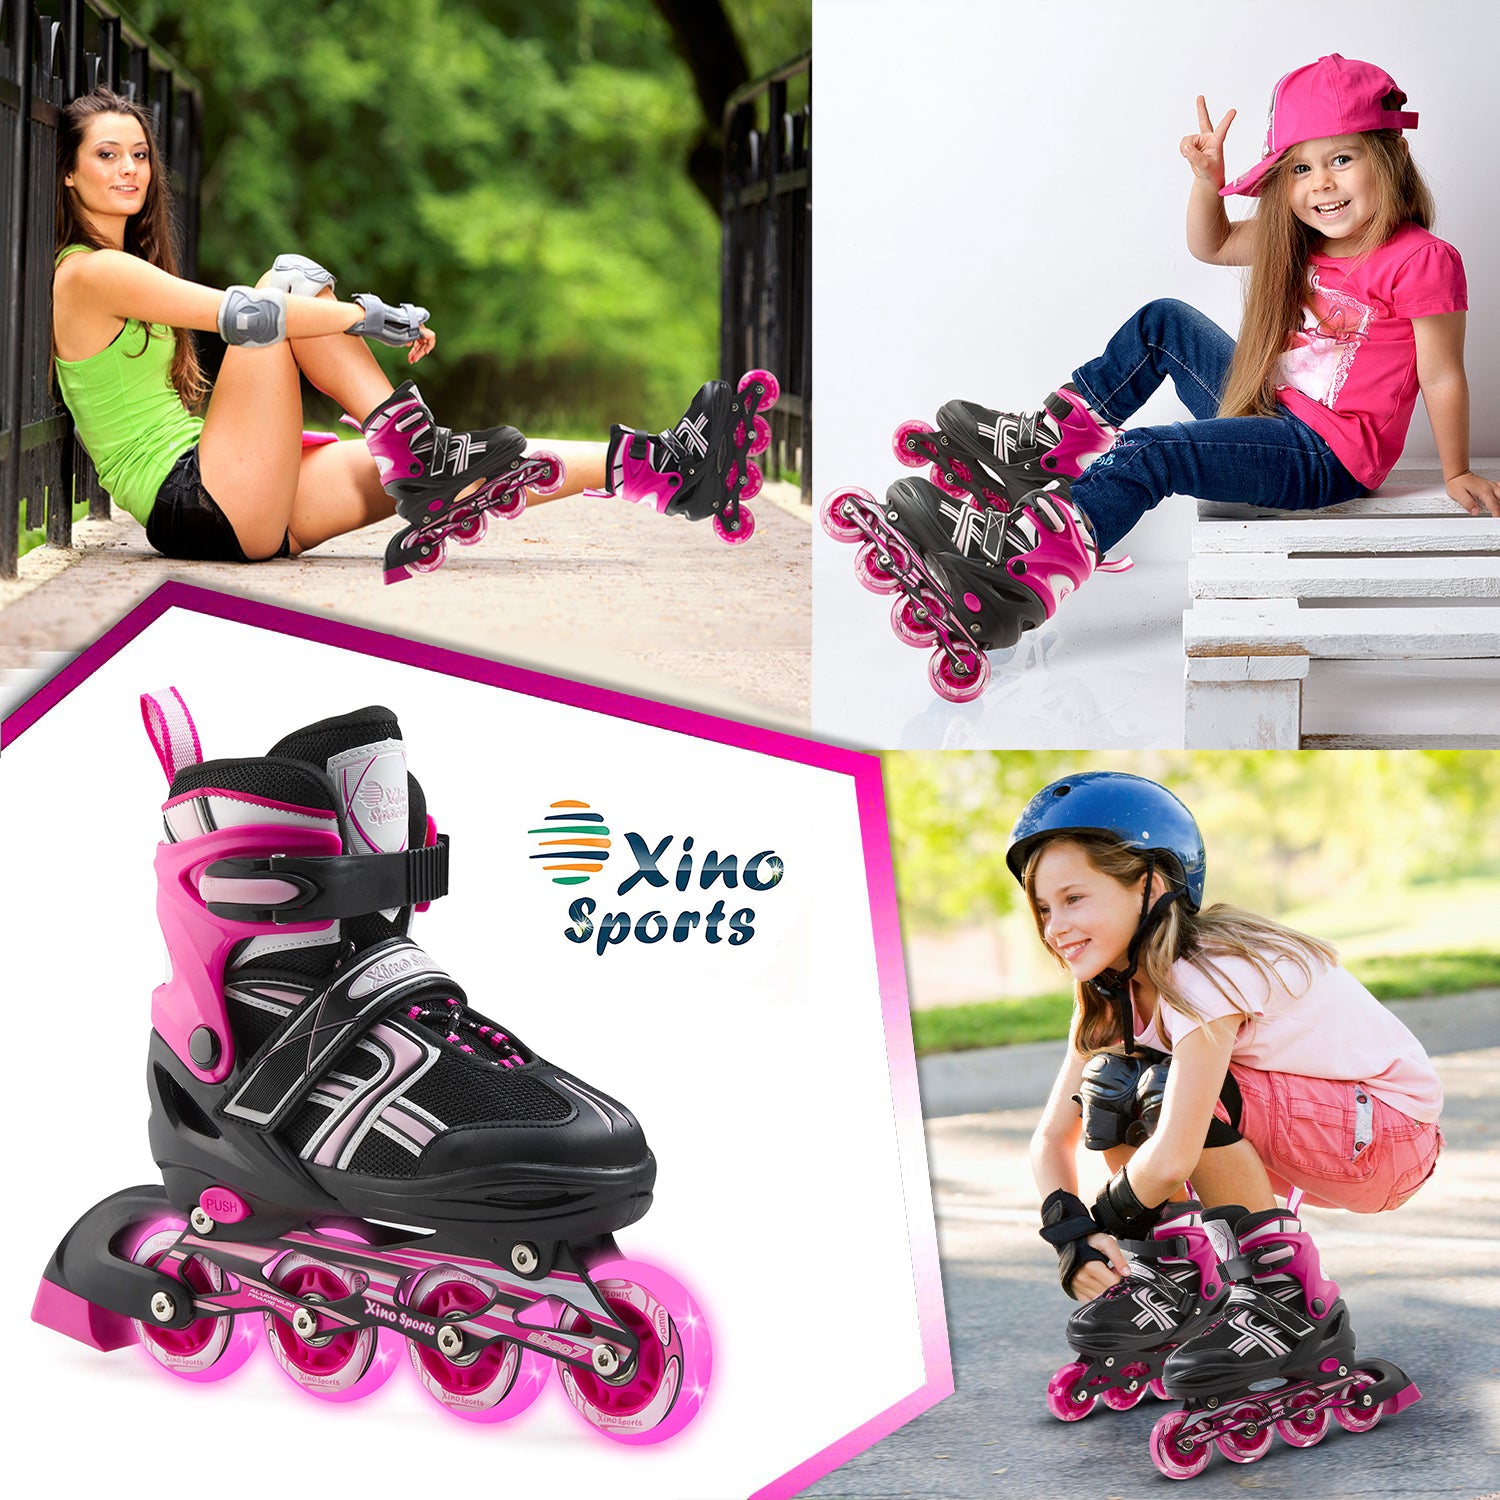 Kids rollerblades - Xino Sports